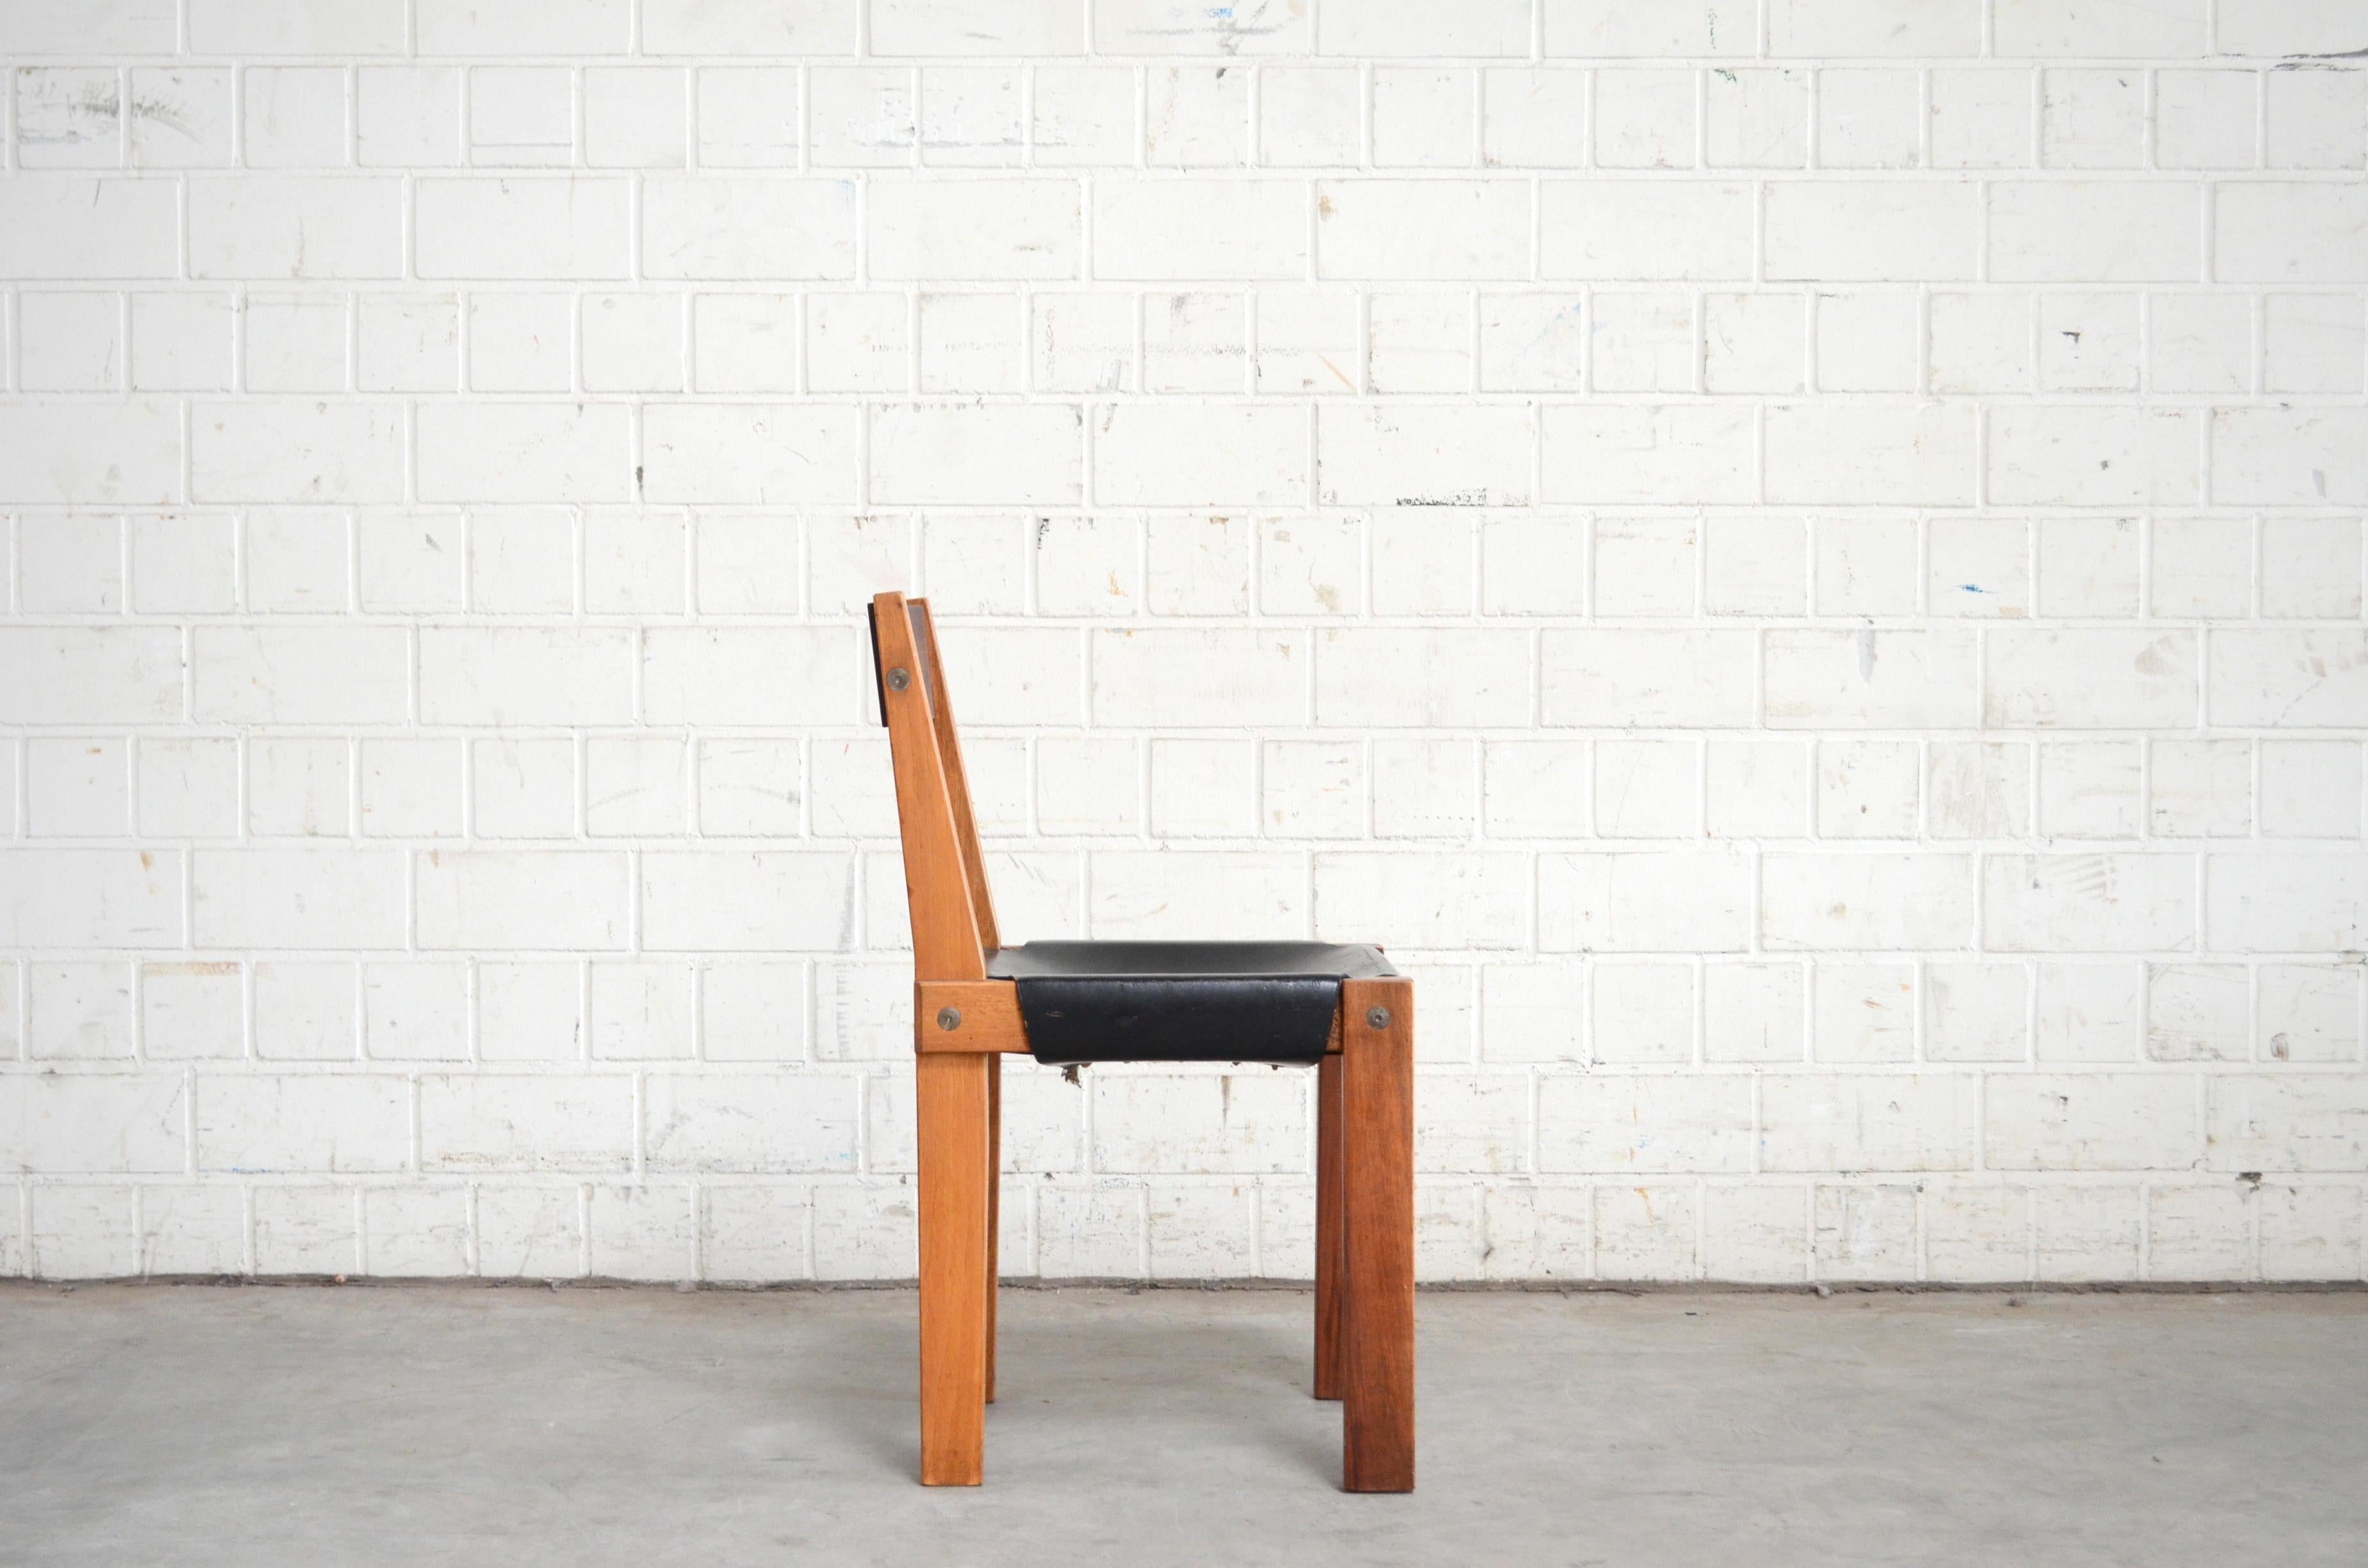 Das Modell  Der Esszimmerstuhl S 24 Pierre Chapo ist ein Meisterwerk.
Pierre Chapo hat diesen Stuhl 1967 für seinen Freund Dr. Hiroshi Nakajima entworfen.
Hergestellt aus geöltem Ulmenholz und schwarzem Sattelleder.
Dieser Stuhl ist eine frühe